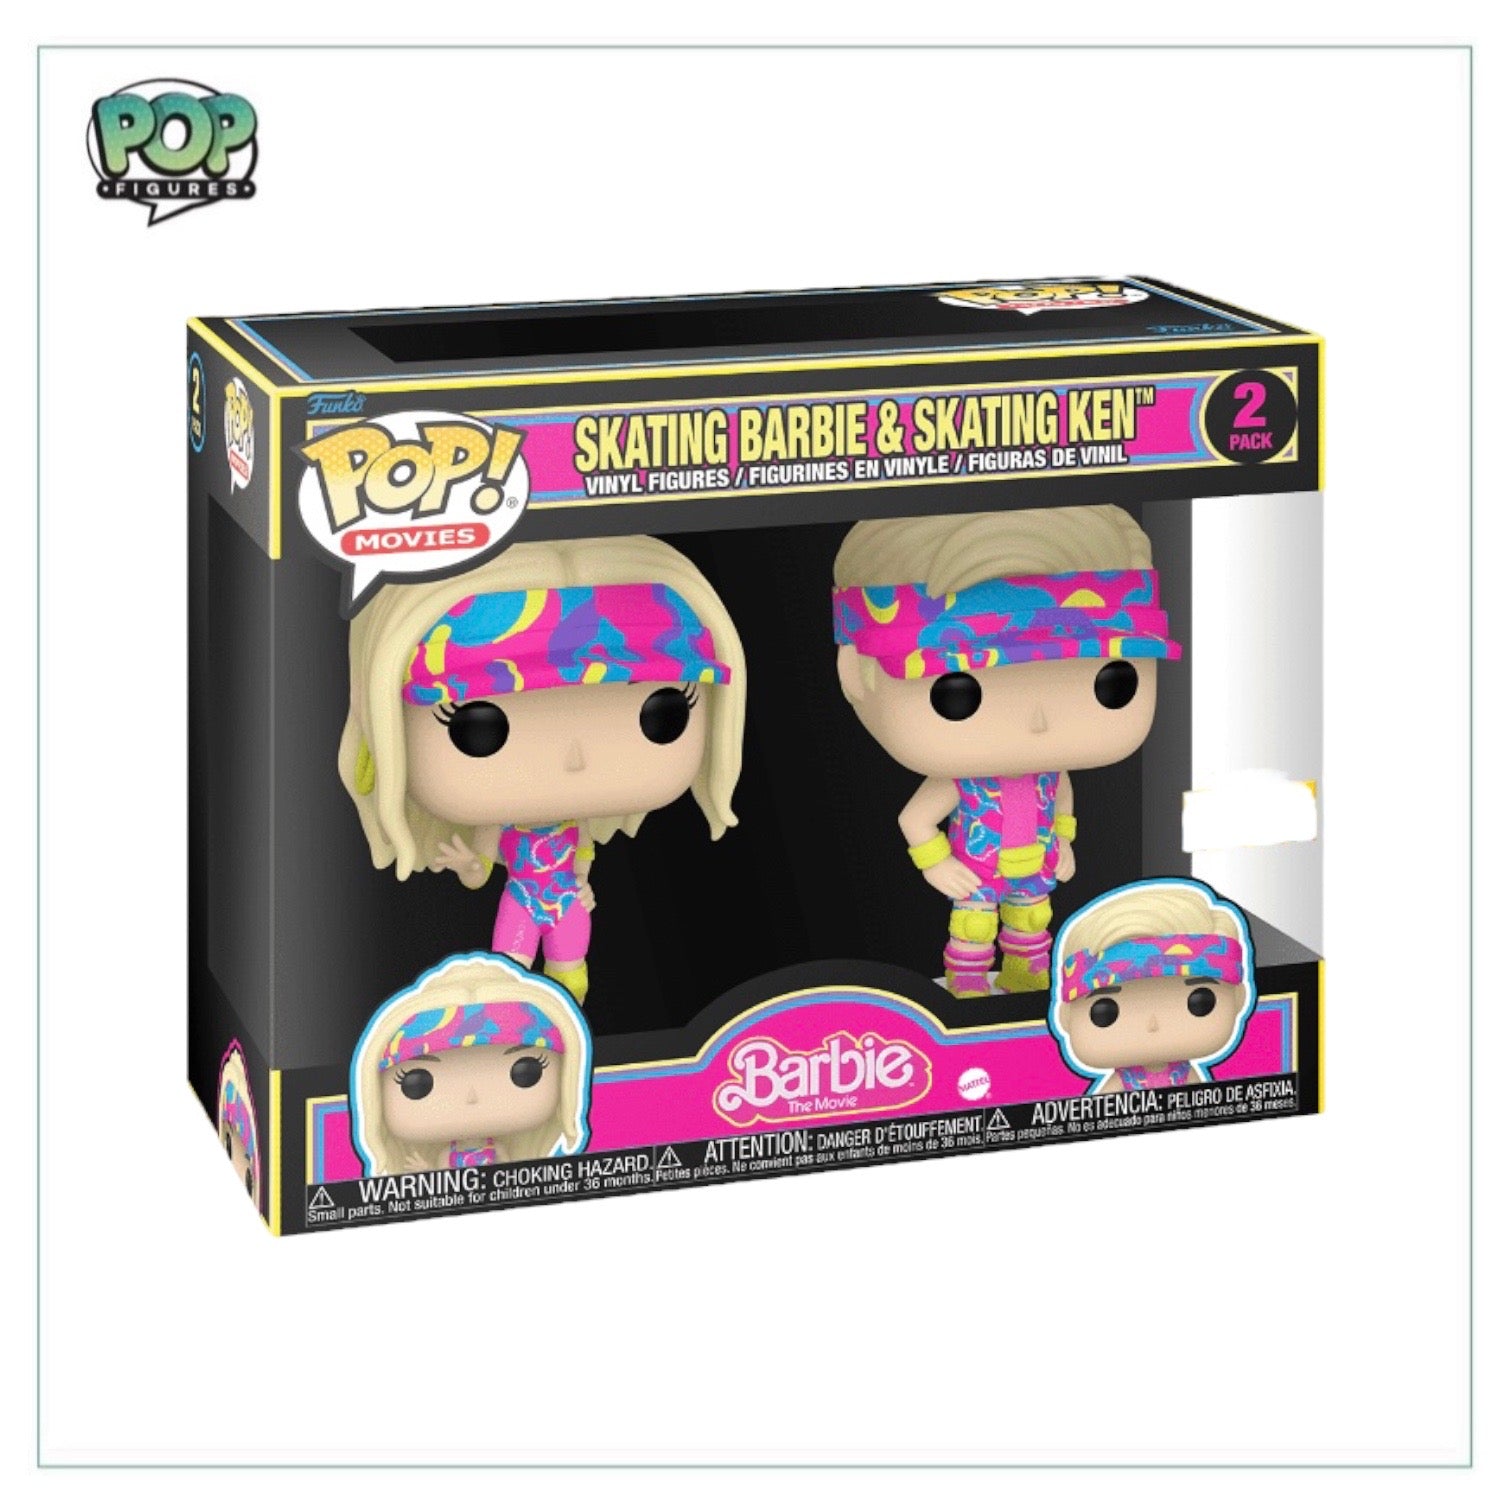 Skating Barbie & Skating Ken 2 Pack Funko Pop! - Barbie The Movie